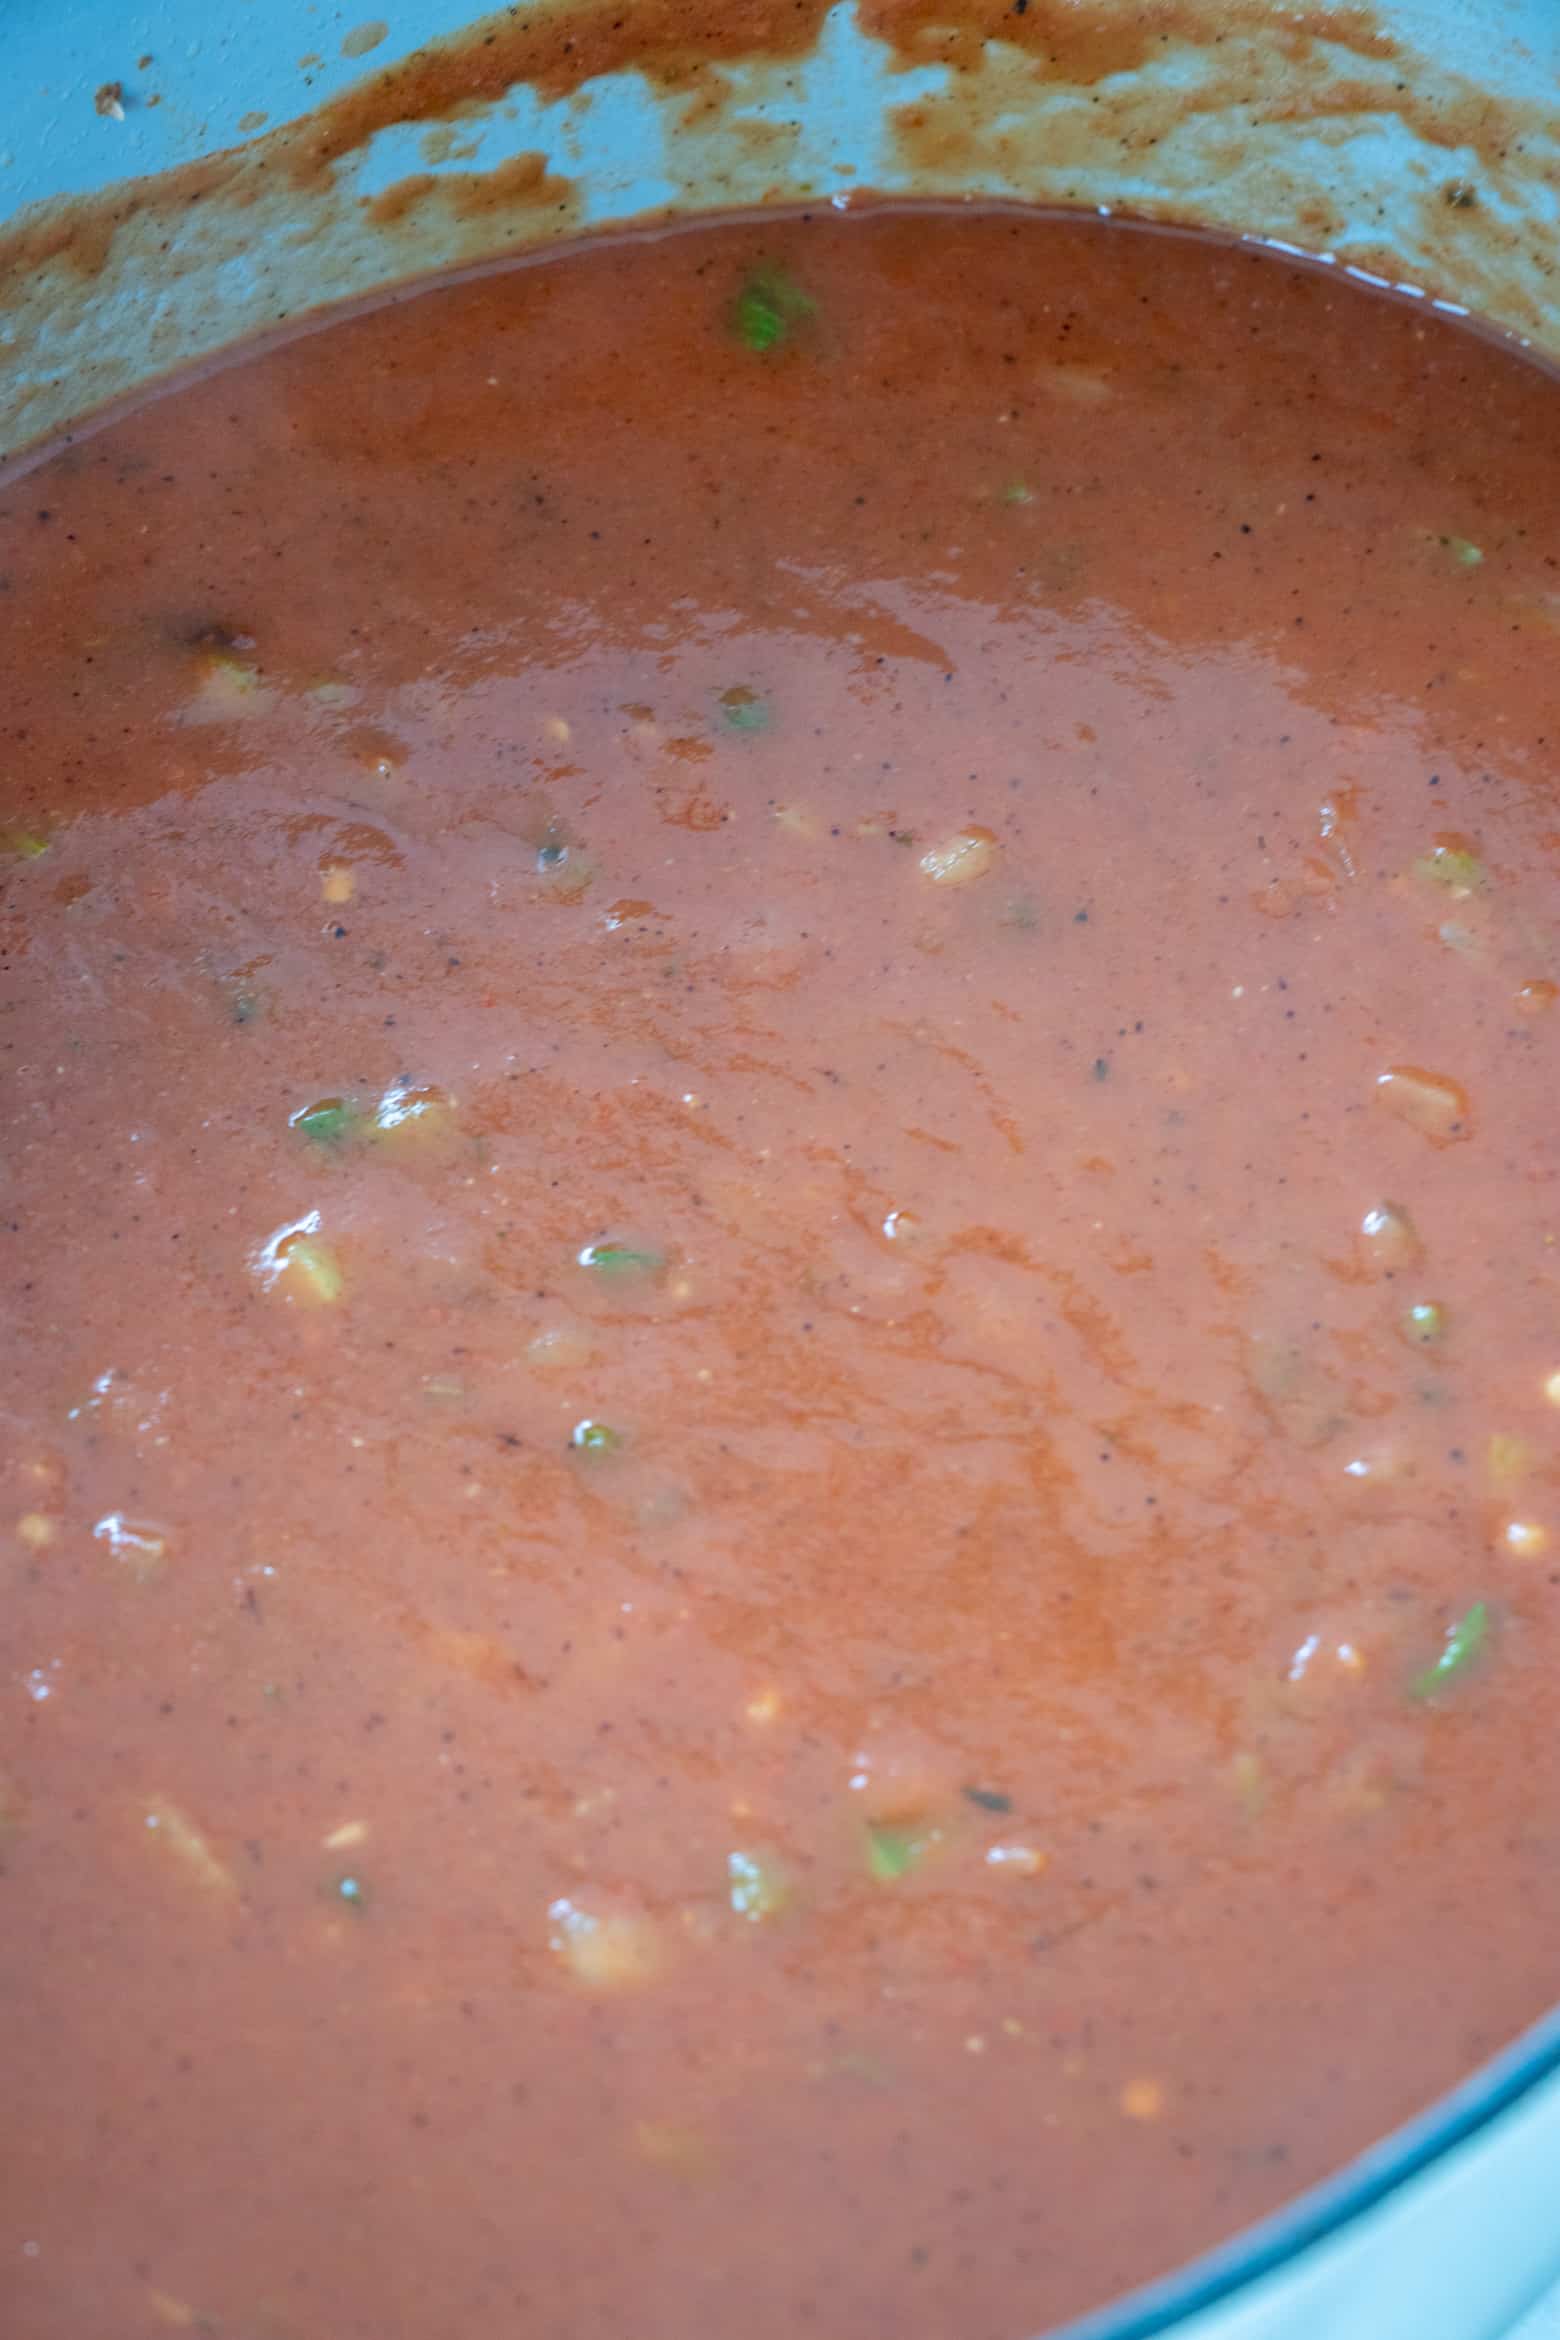 Piquante Sauce in a pot.